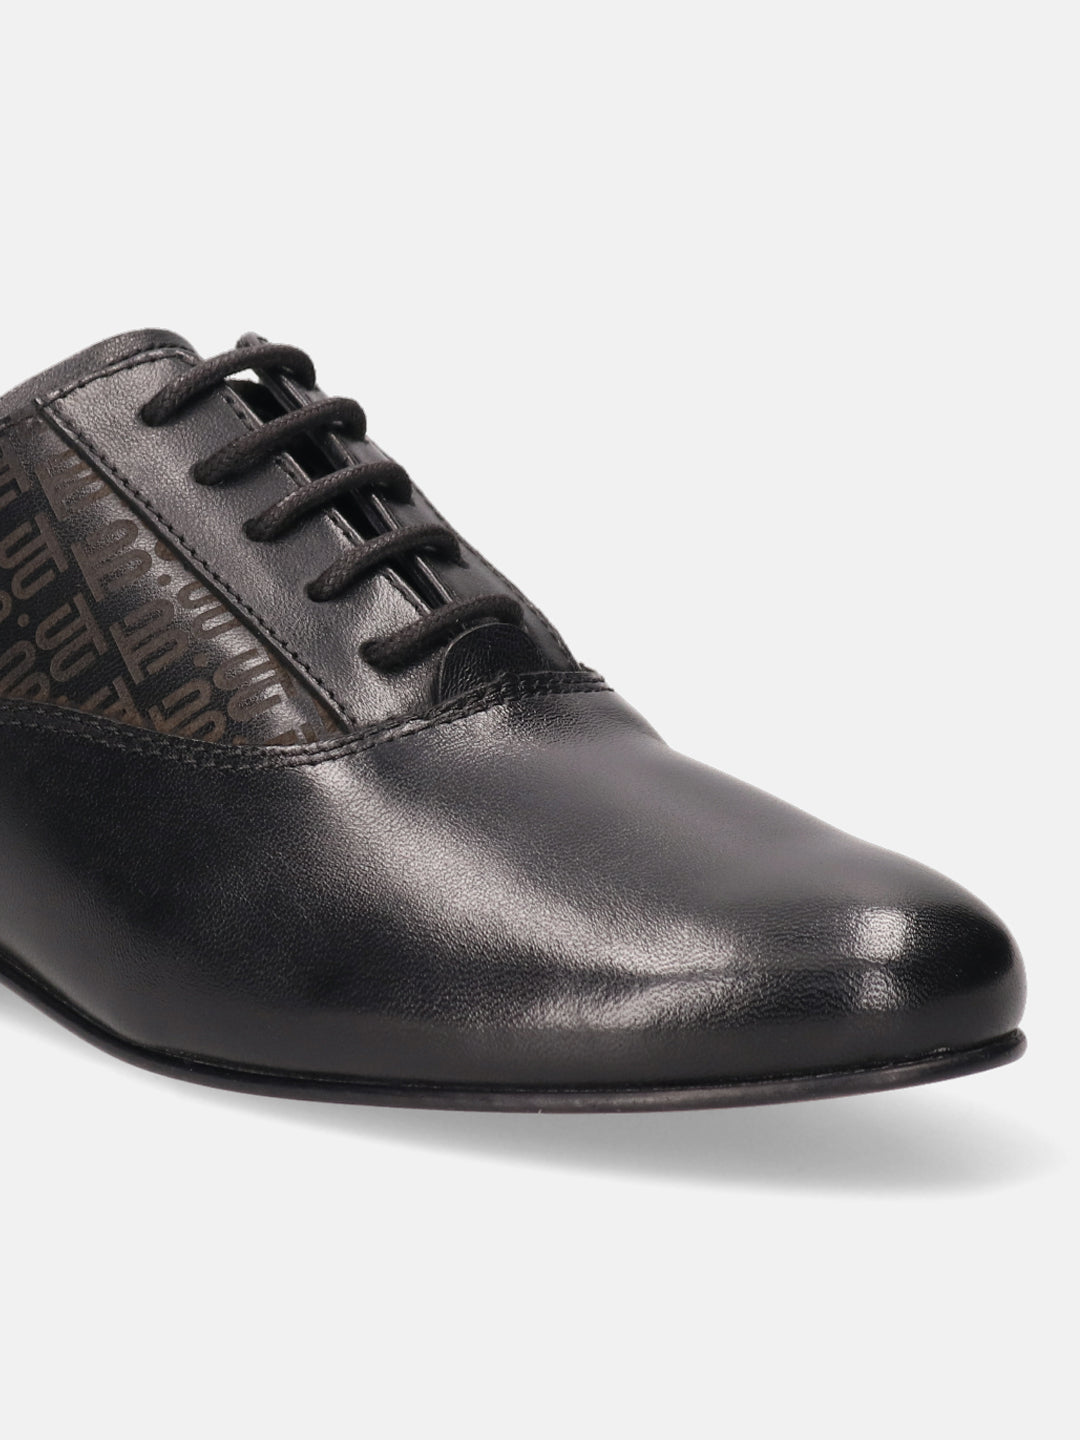 BAGATT Premium Leather Black Sneakers